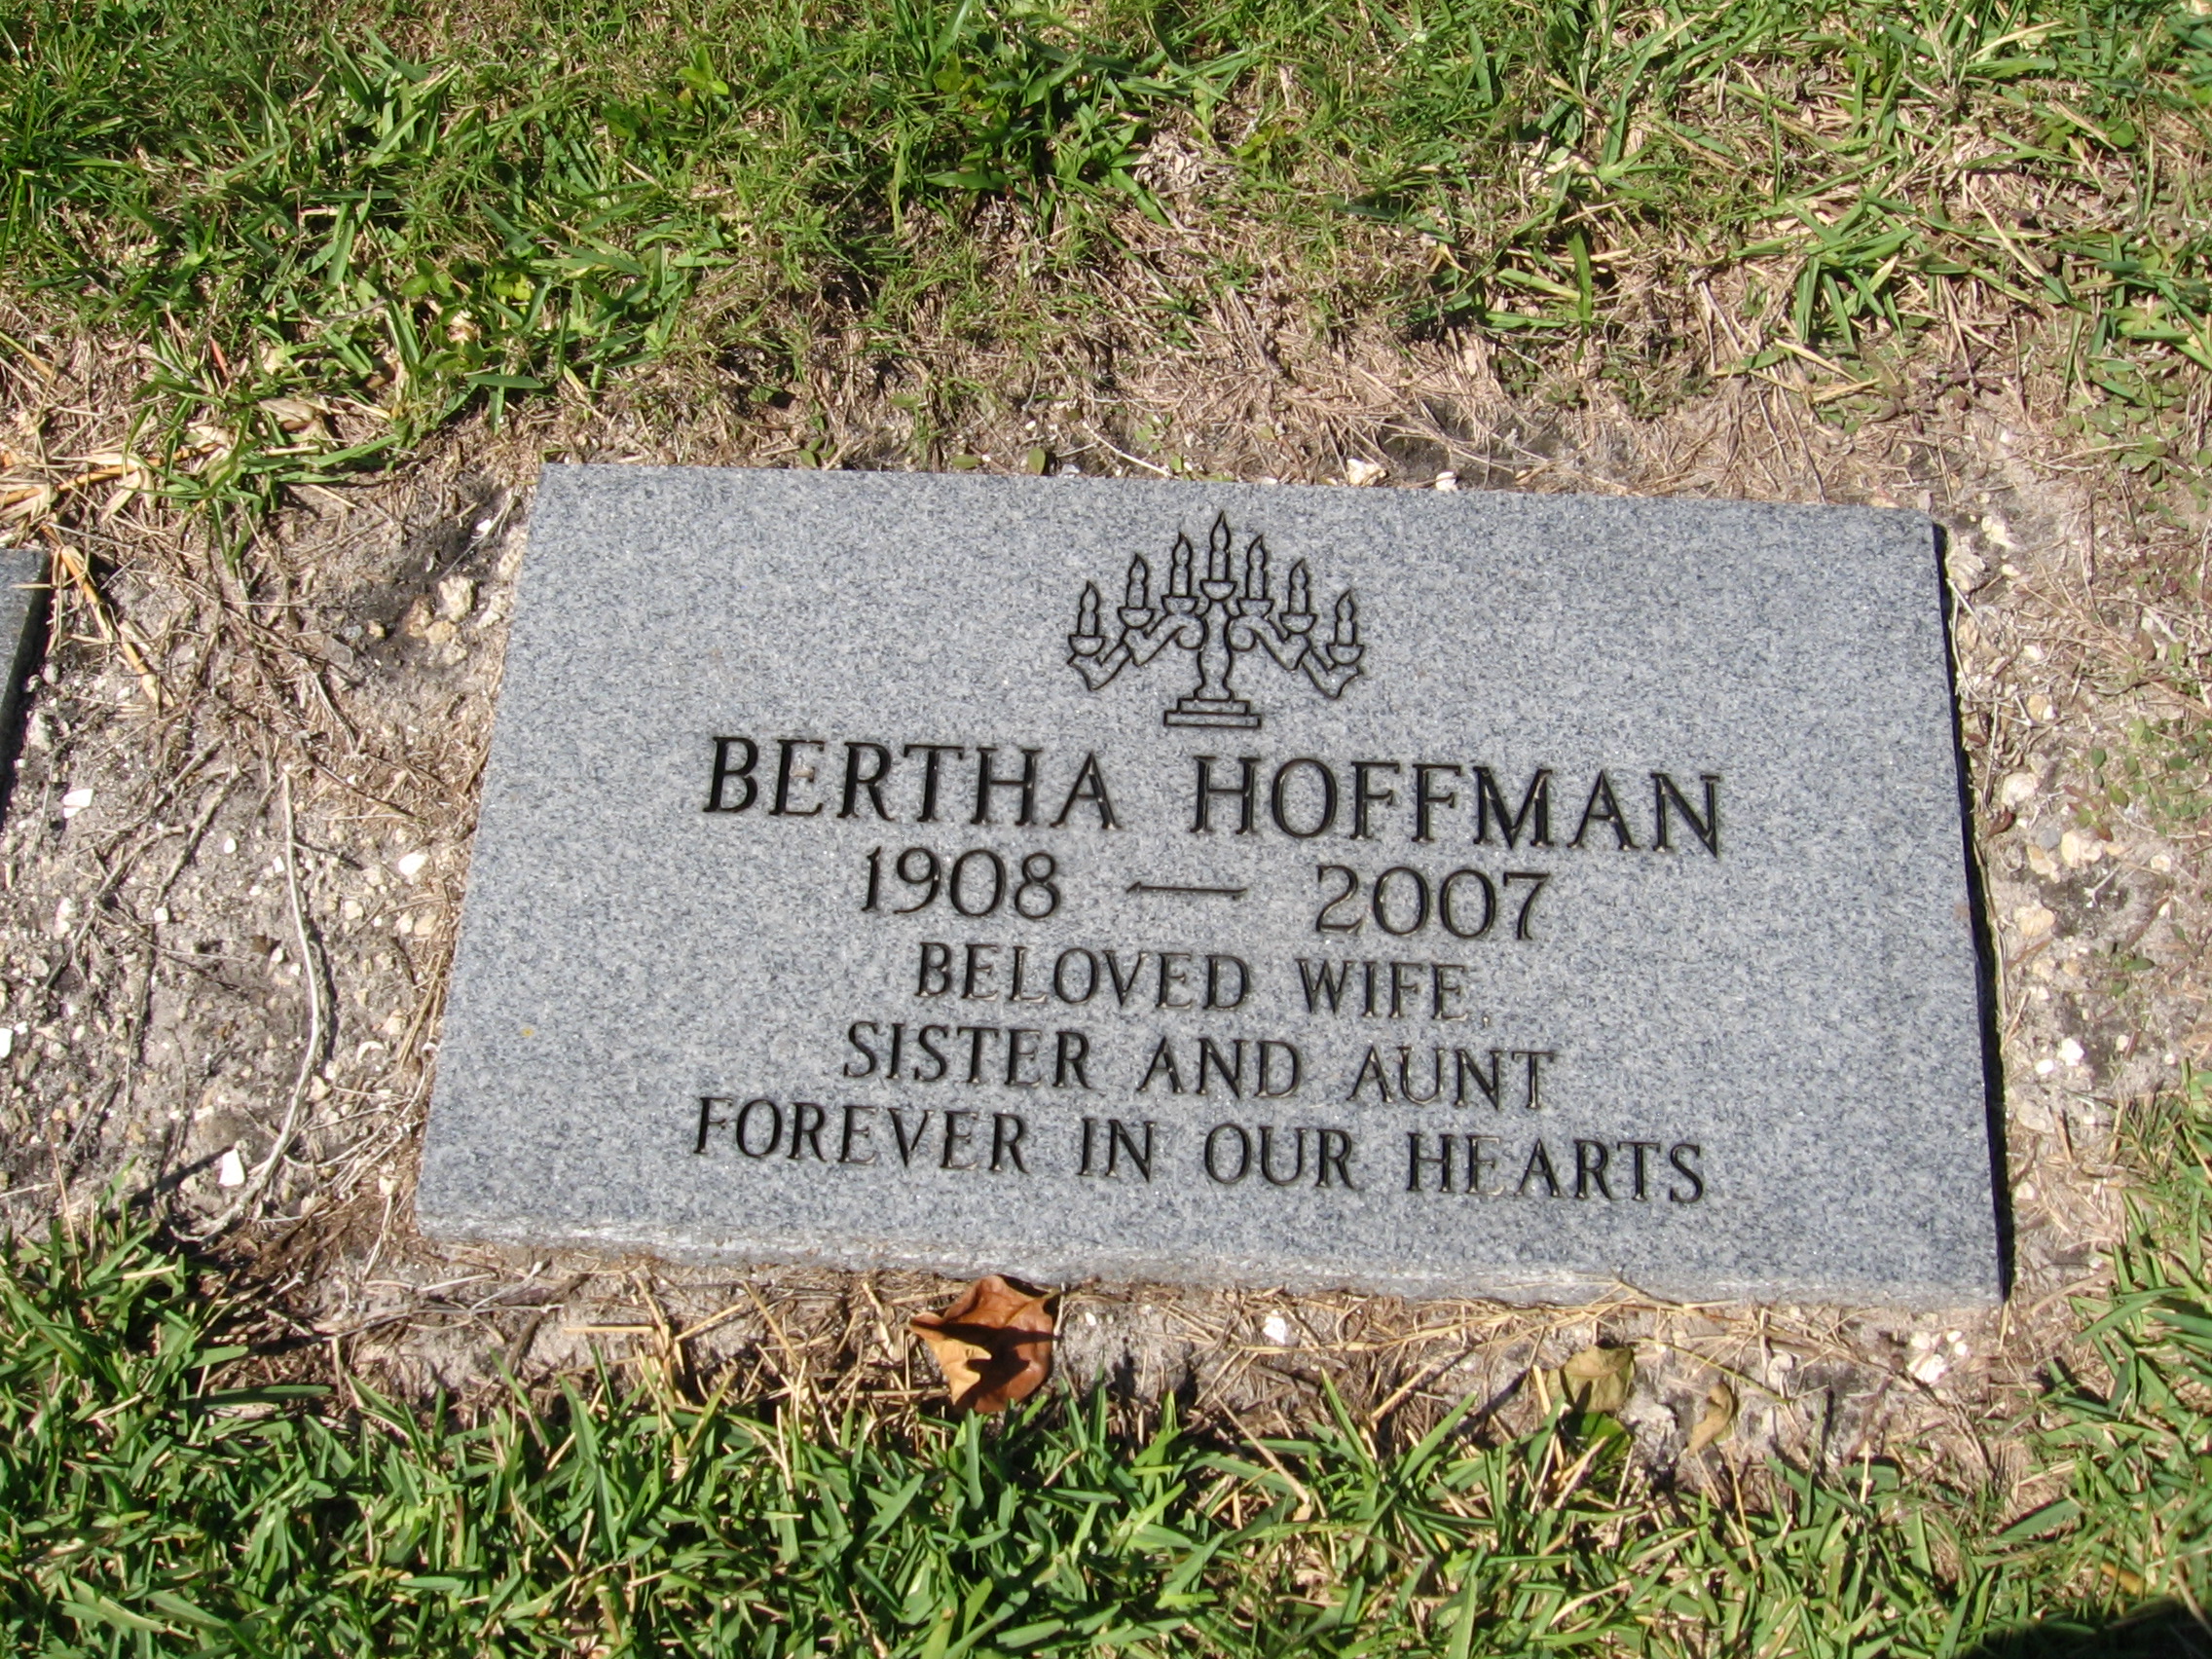 Bertha Hoffman